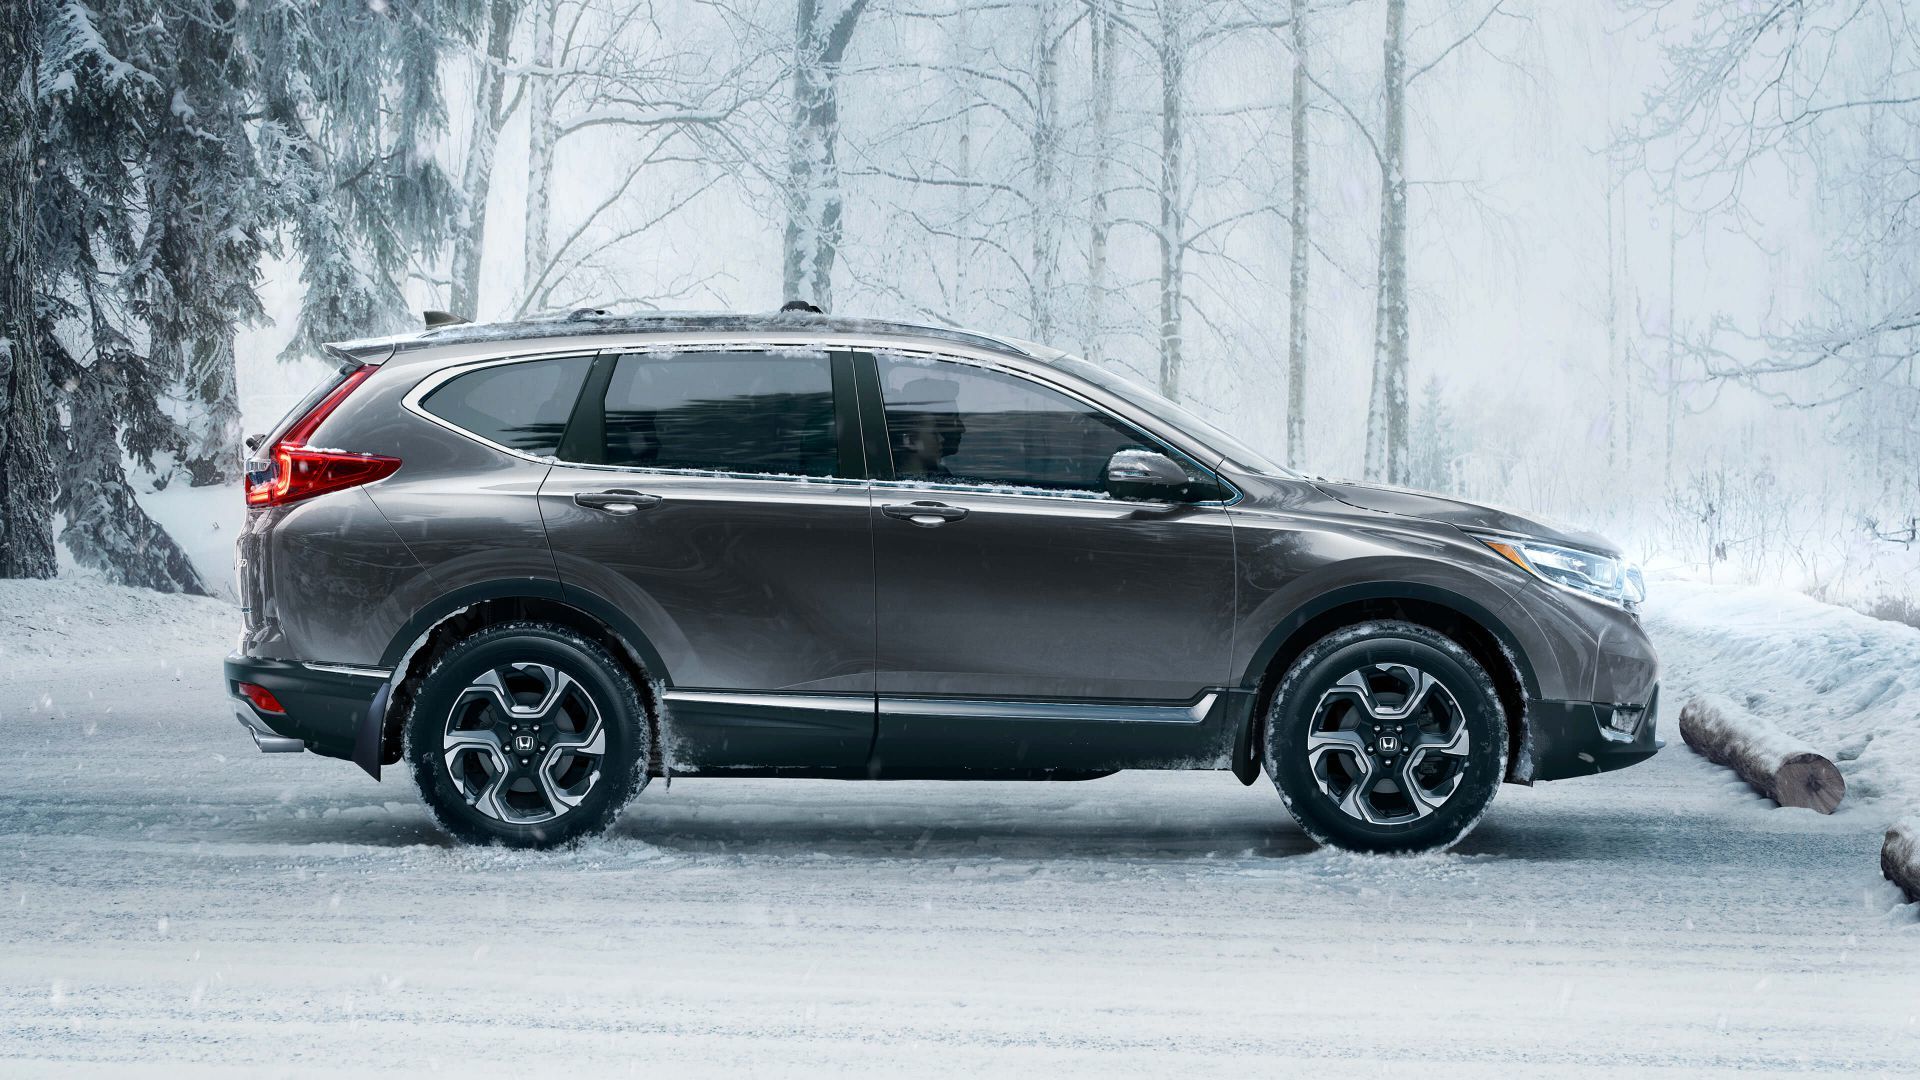 Honda CR-V 2018 de profil, dans une forêt pendant la saison hivernale